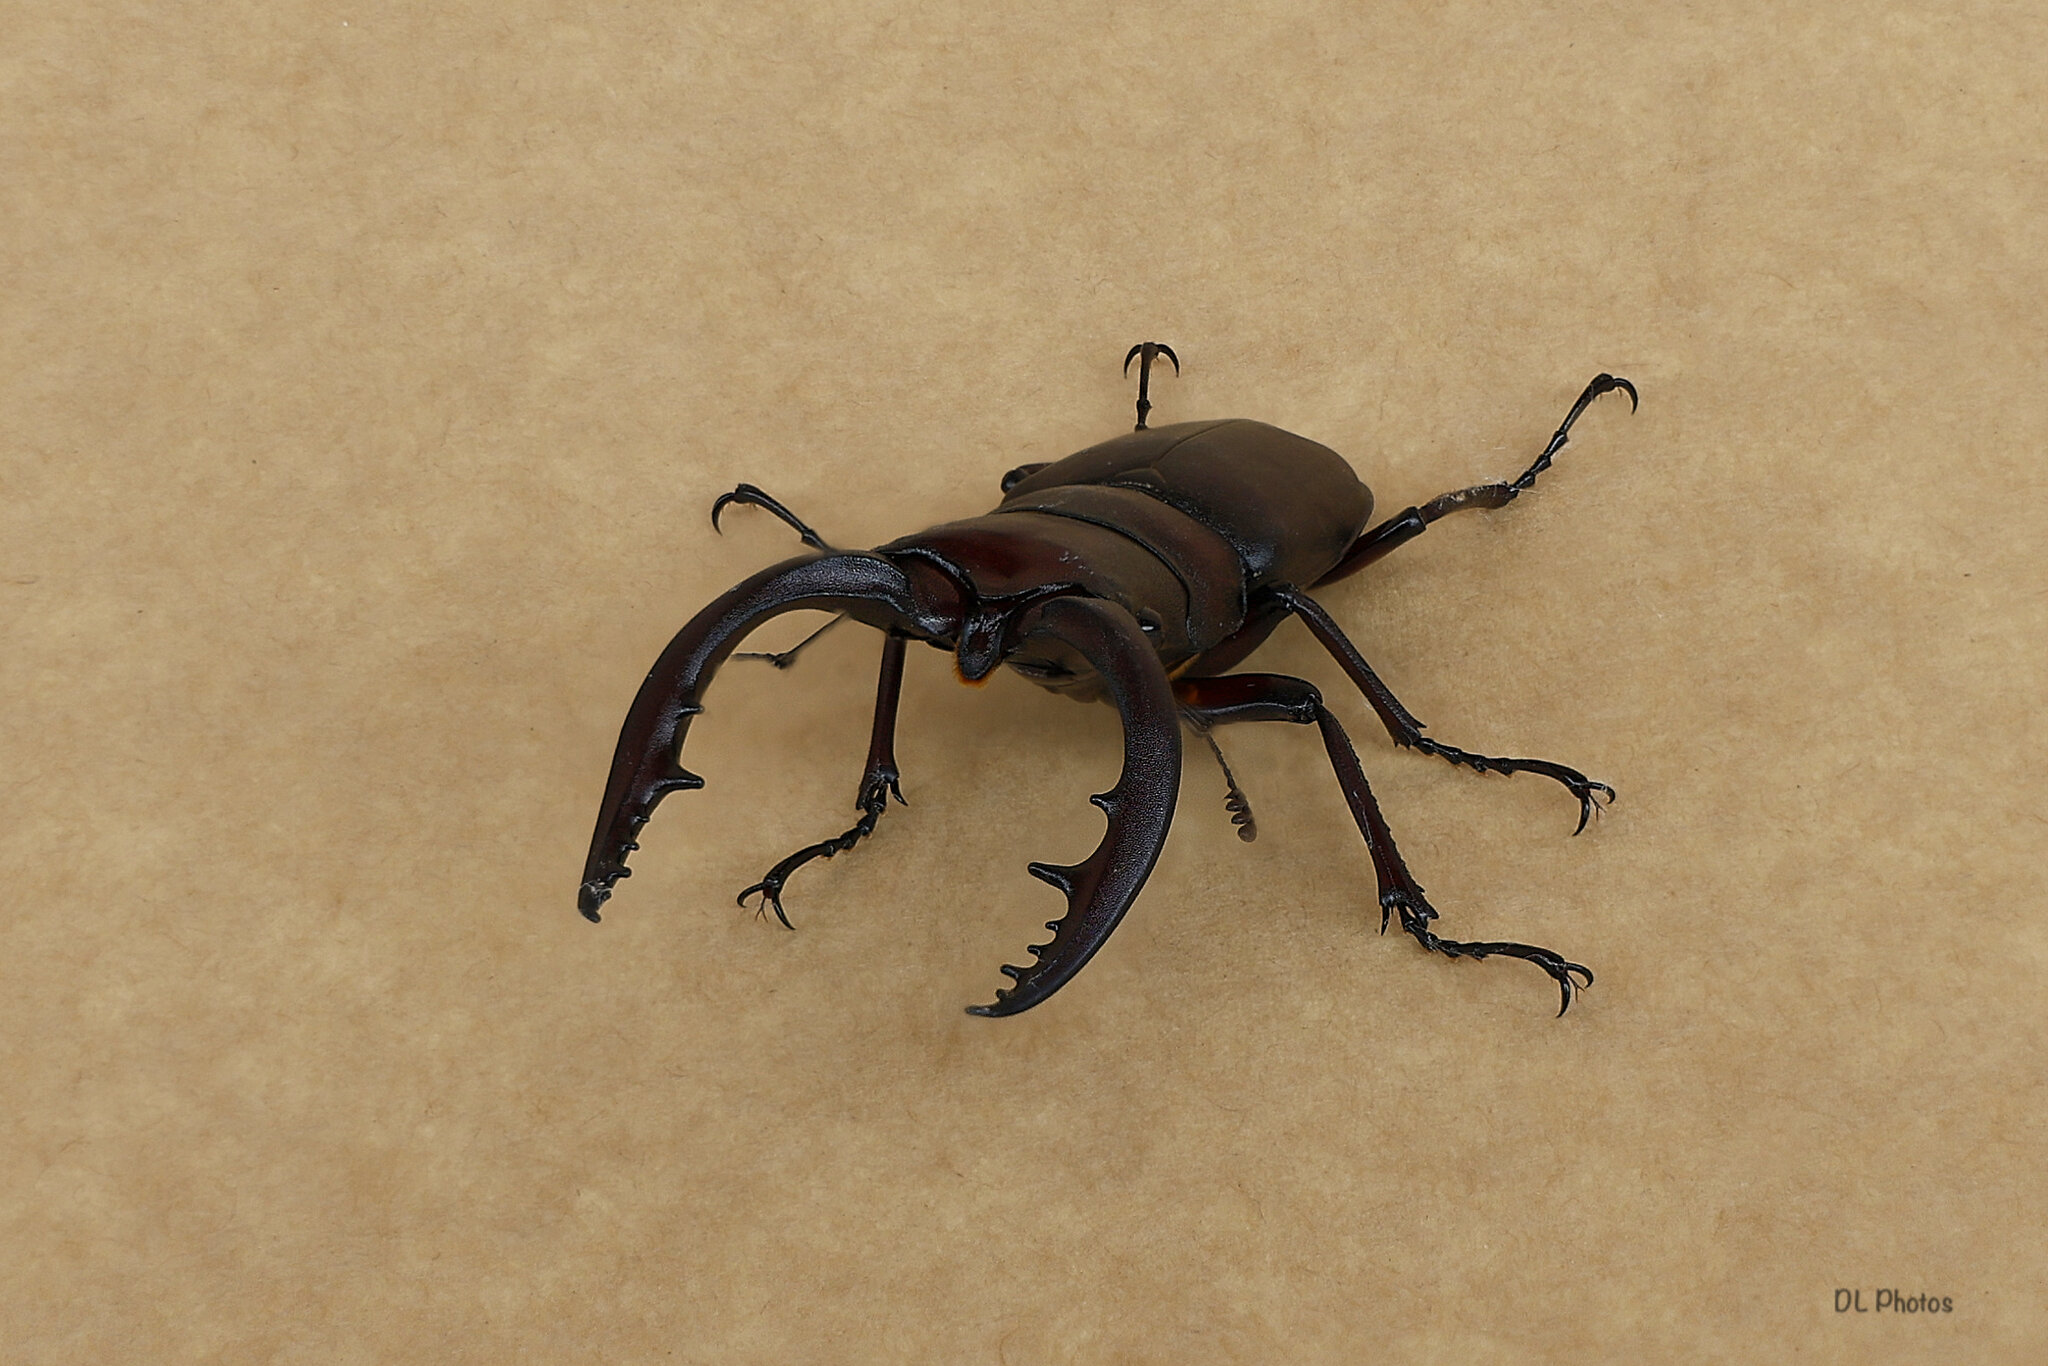 Stag beetle.jpg